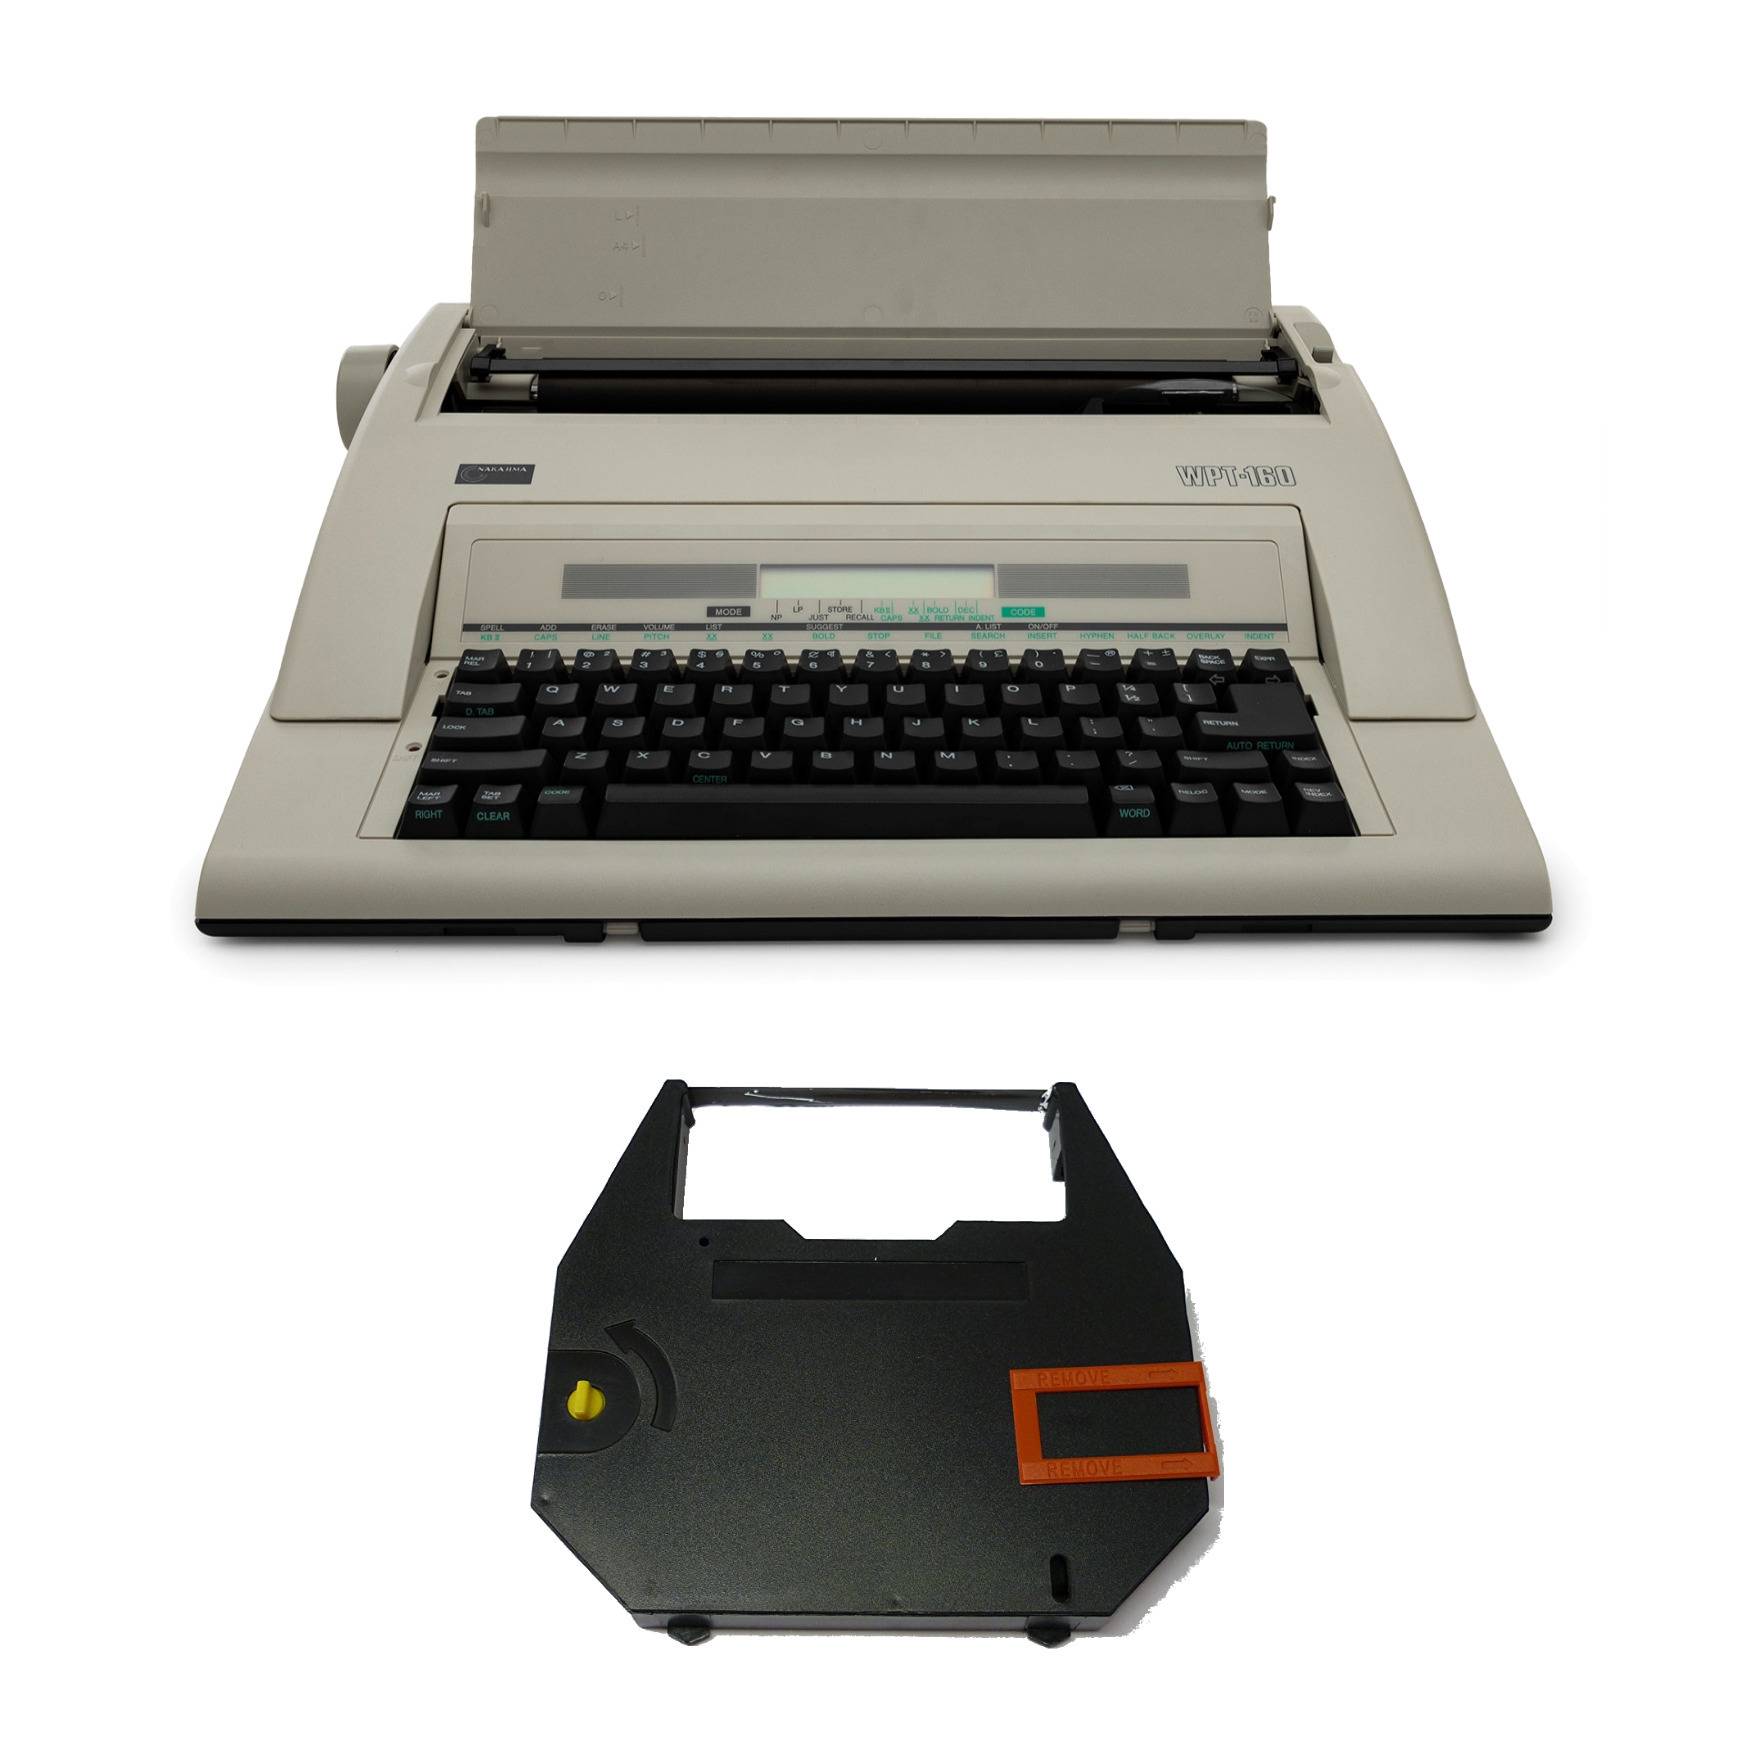 Nakajima WPT-160 Electronic Portable Typewriter with Correct Film Ribbon